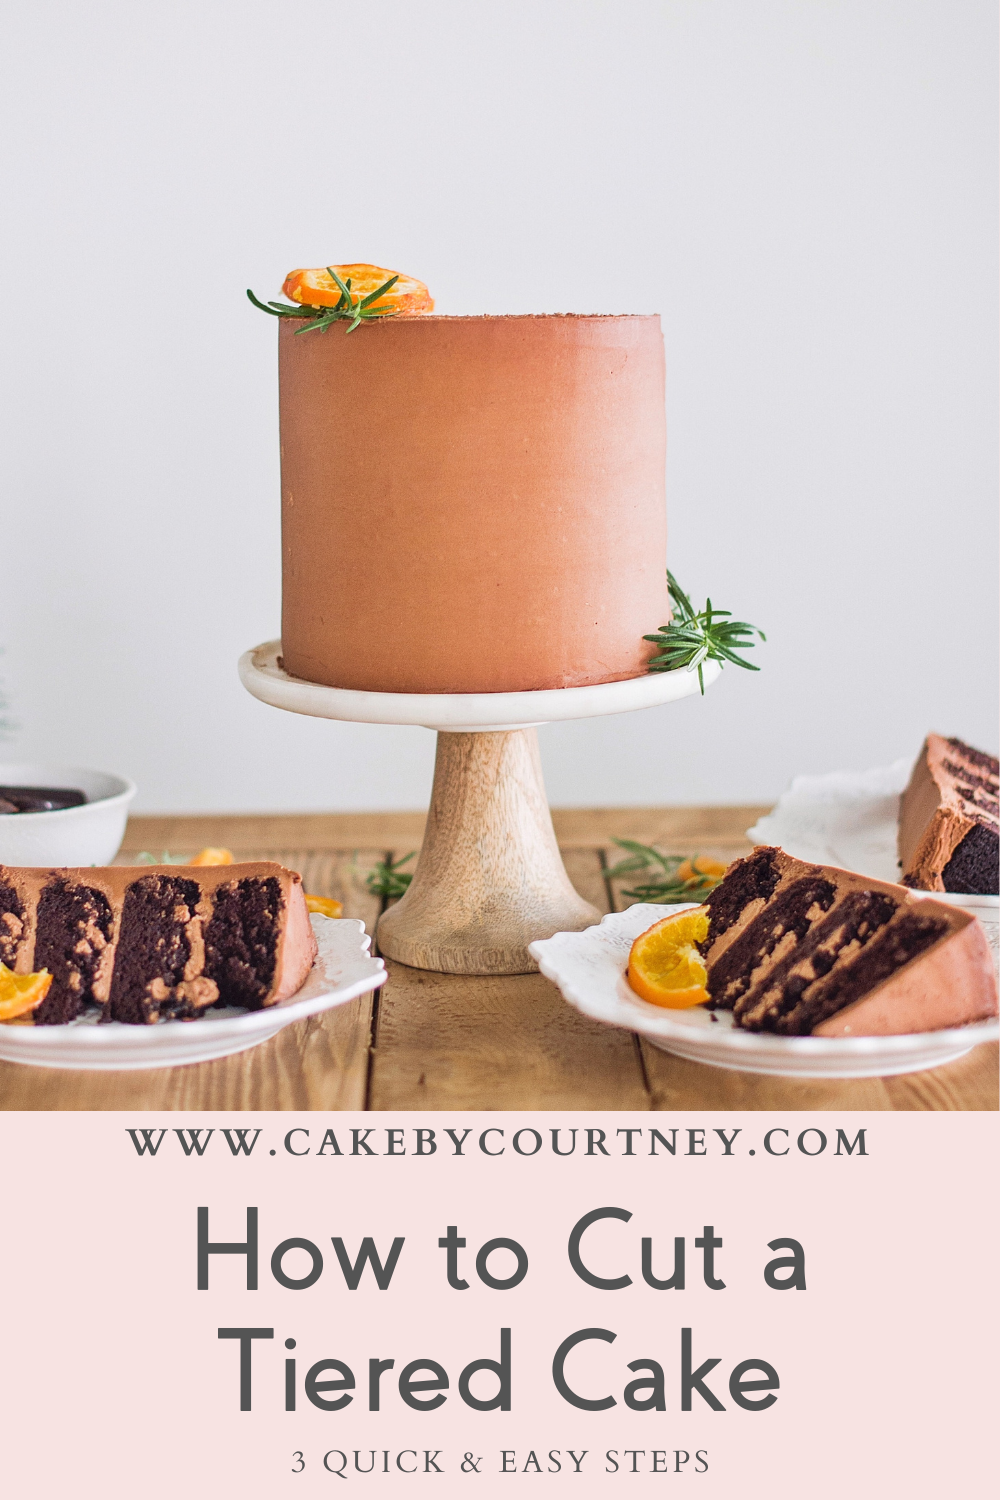 how to cut a tiered cake. www.cakebycourtney.com